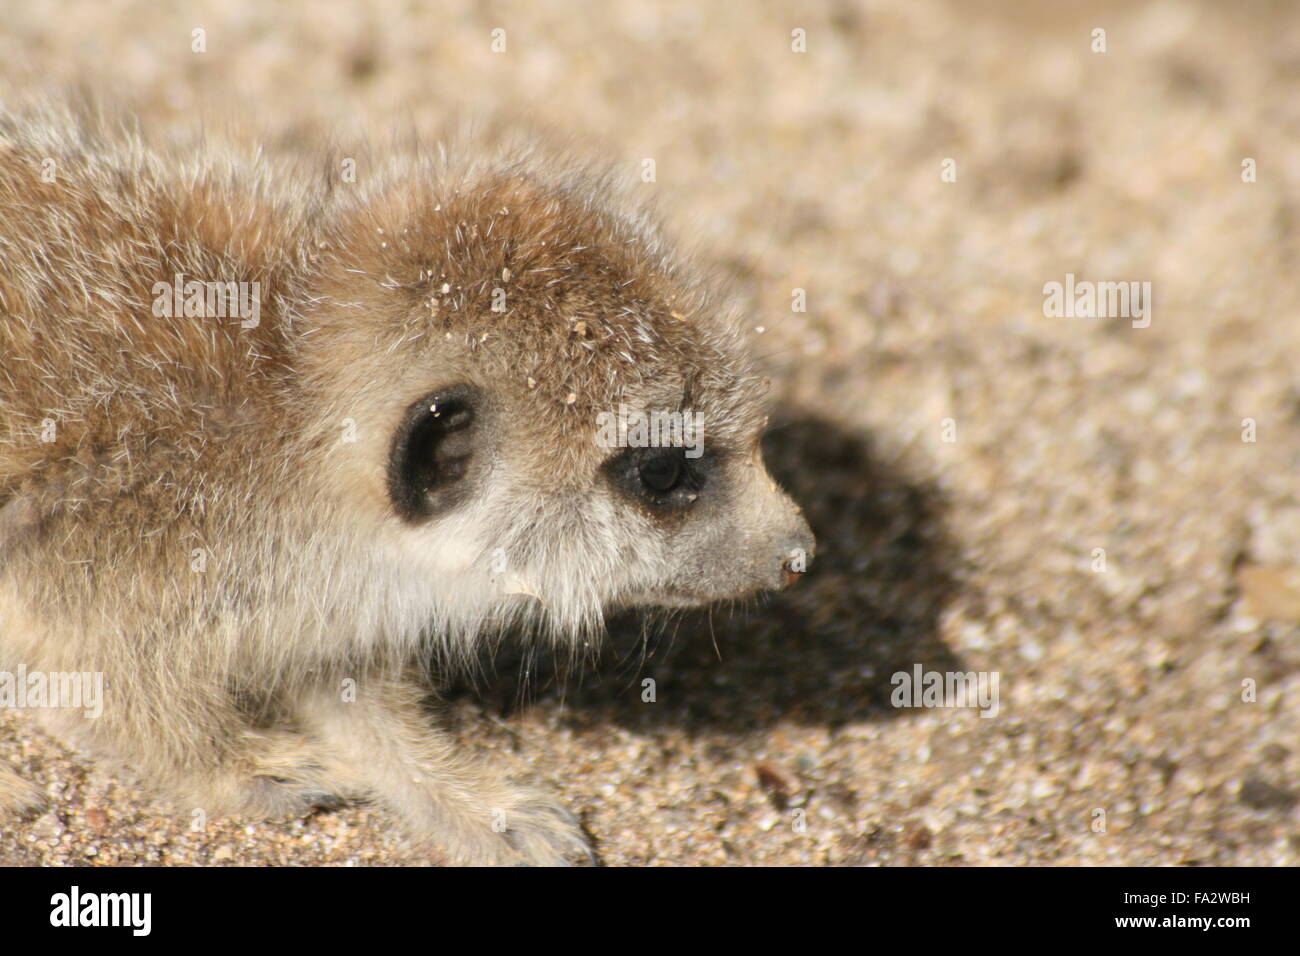 portrait of a Baby meerkat Stock Photo